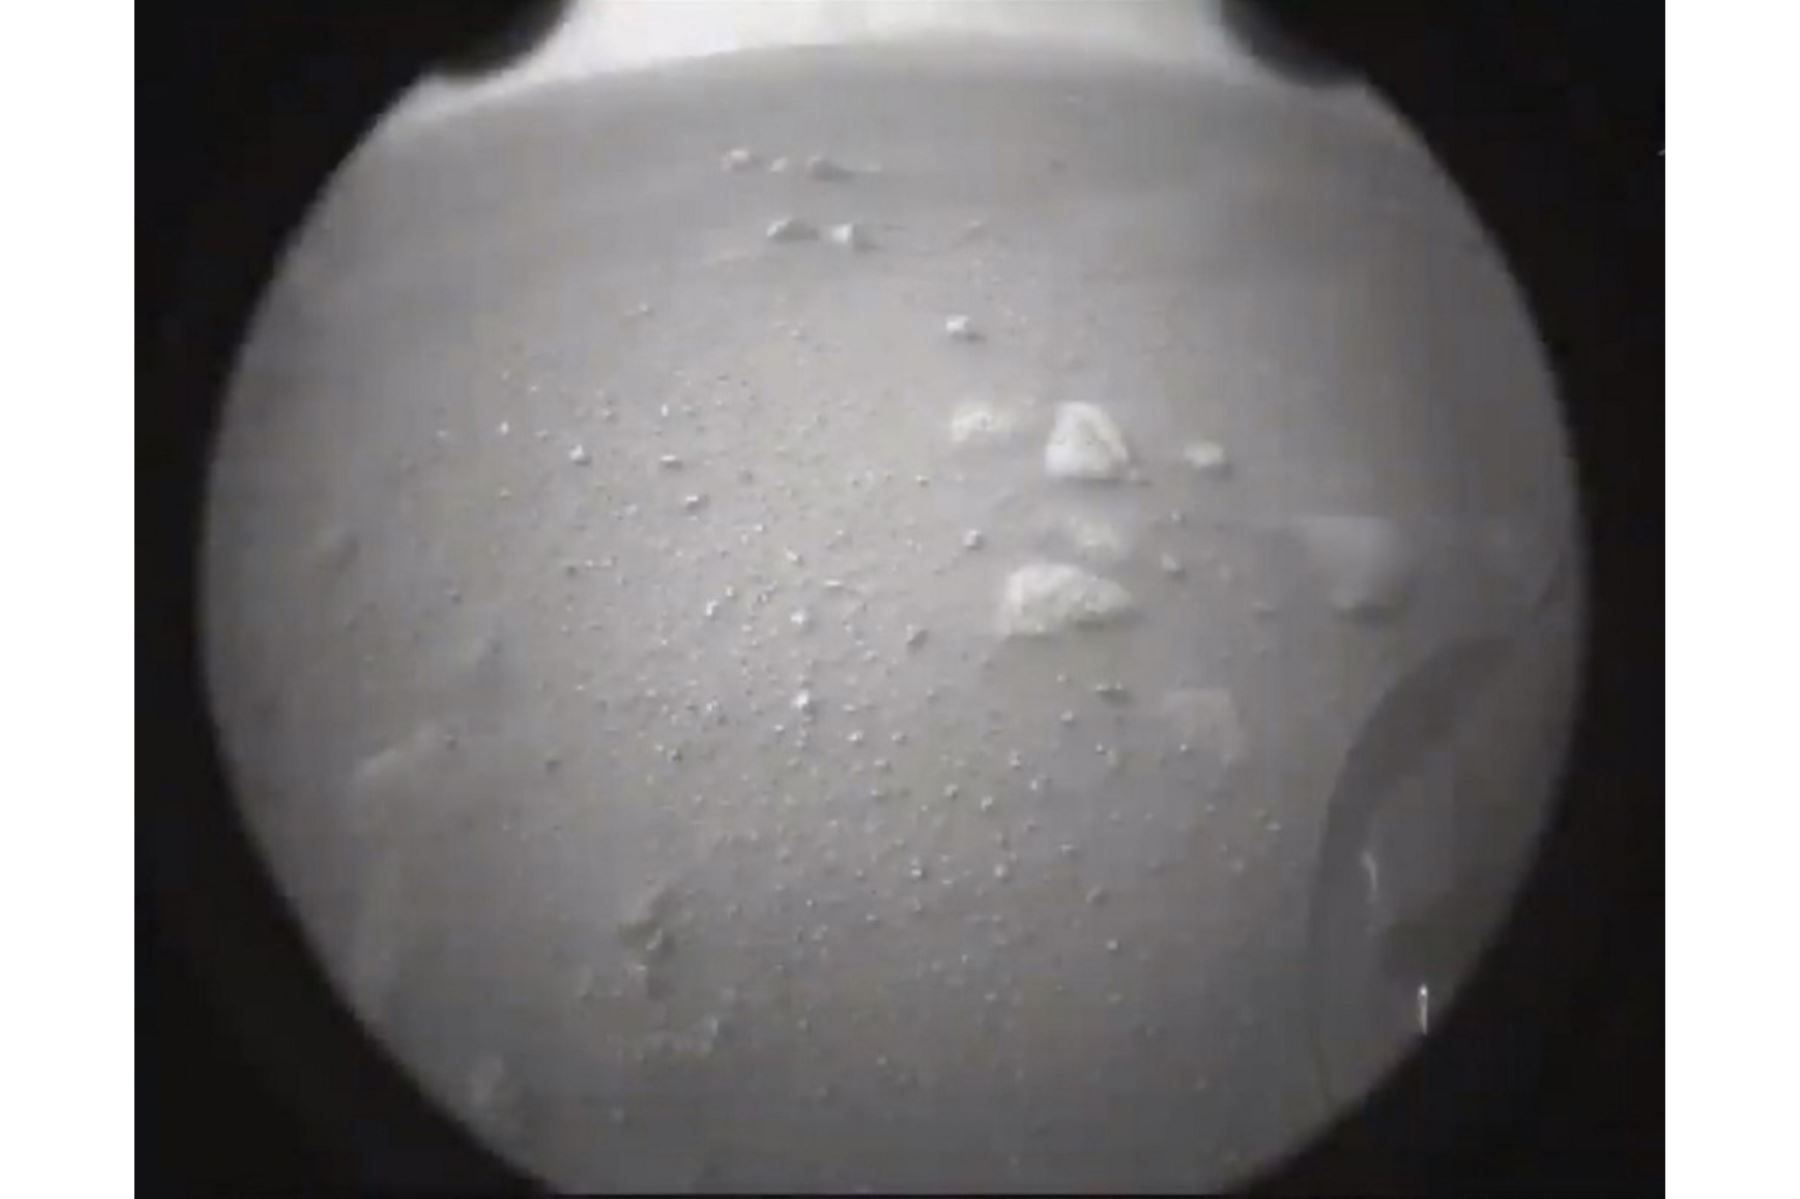 Primera imagen de Marte tomada por el rover Perseverance tras aterrizar en la superficie de Marte el 18 de febrero de 2021. La NASA confirmó la hazaña después de superar con éxito una fase de aterrizaje peligrosa conocida como los "siete minutos de terror". "Aterrizaje confirmado", dijo el líder de operaciones Swati Mohan alrededor de las 3:55 pm hora del este (2055 GMT). Foto: Handout / NASA / AFP